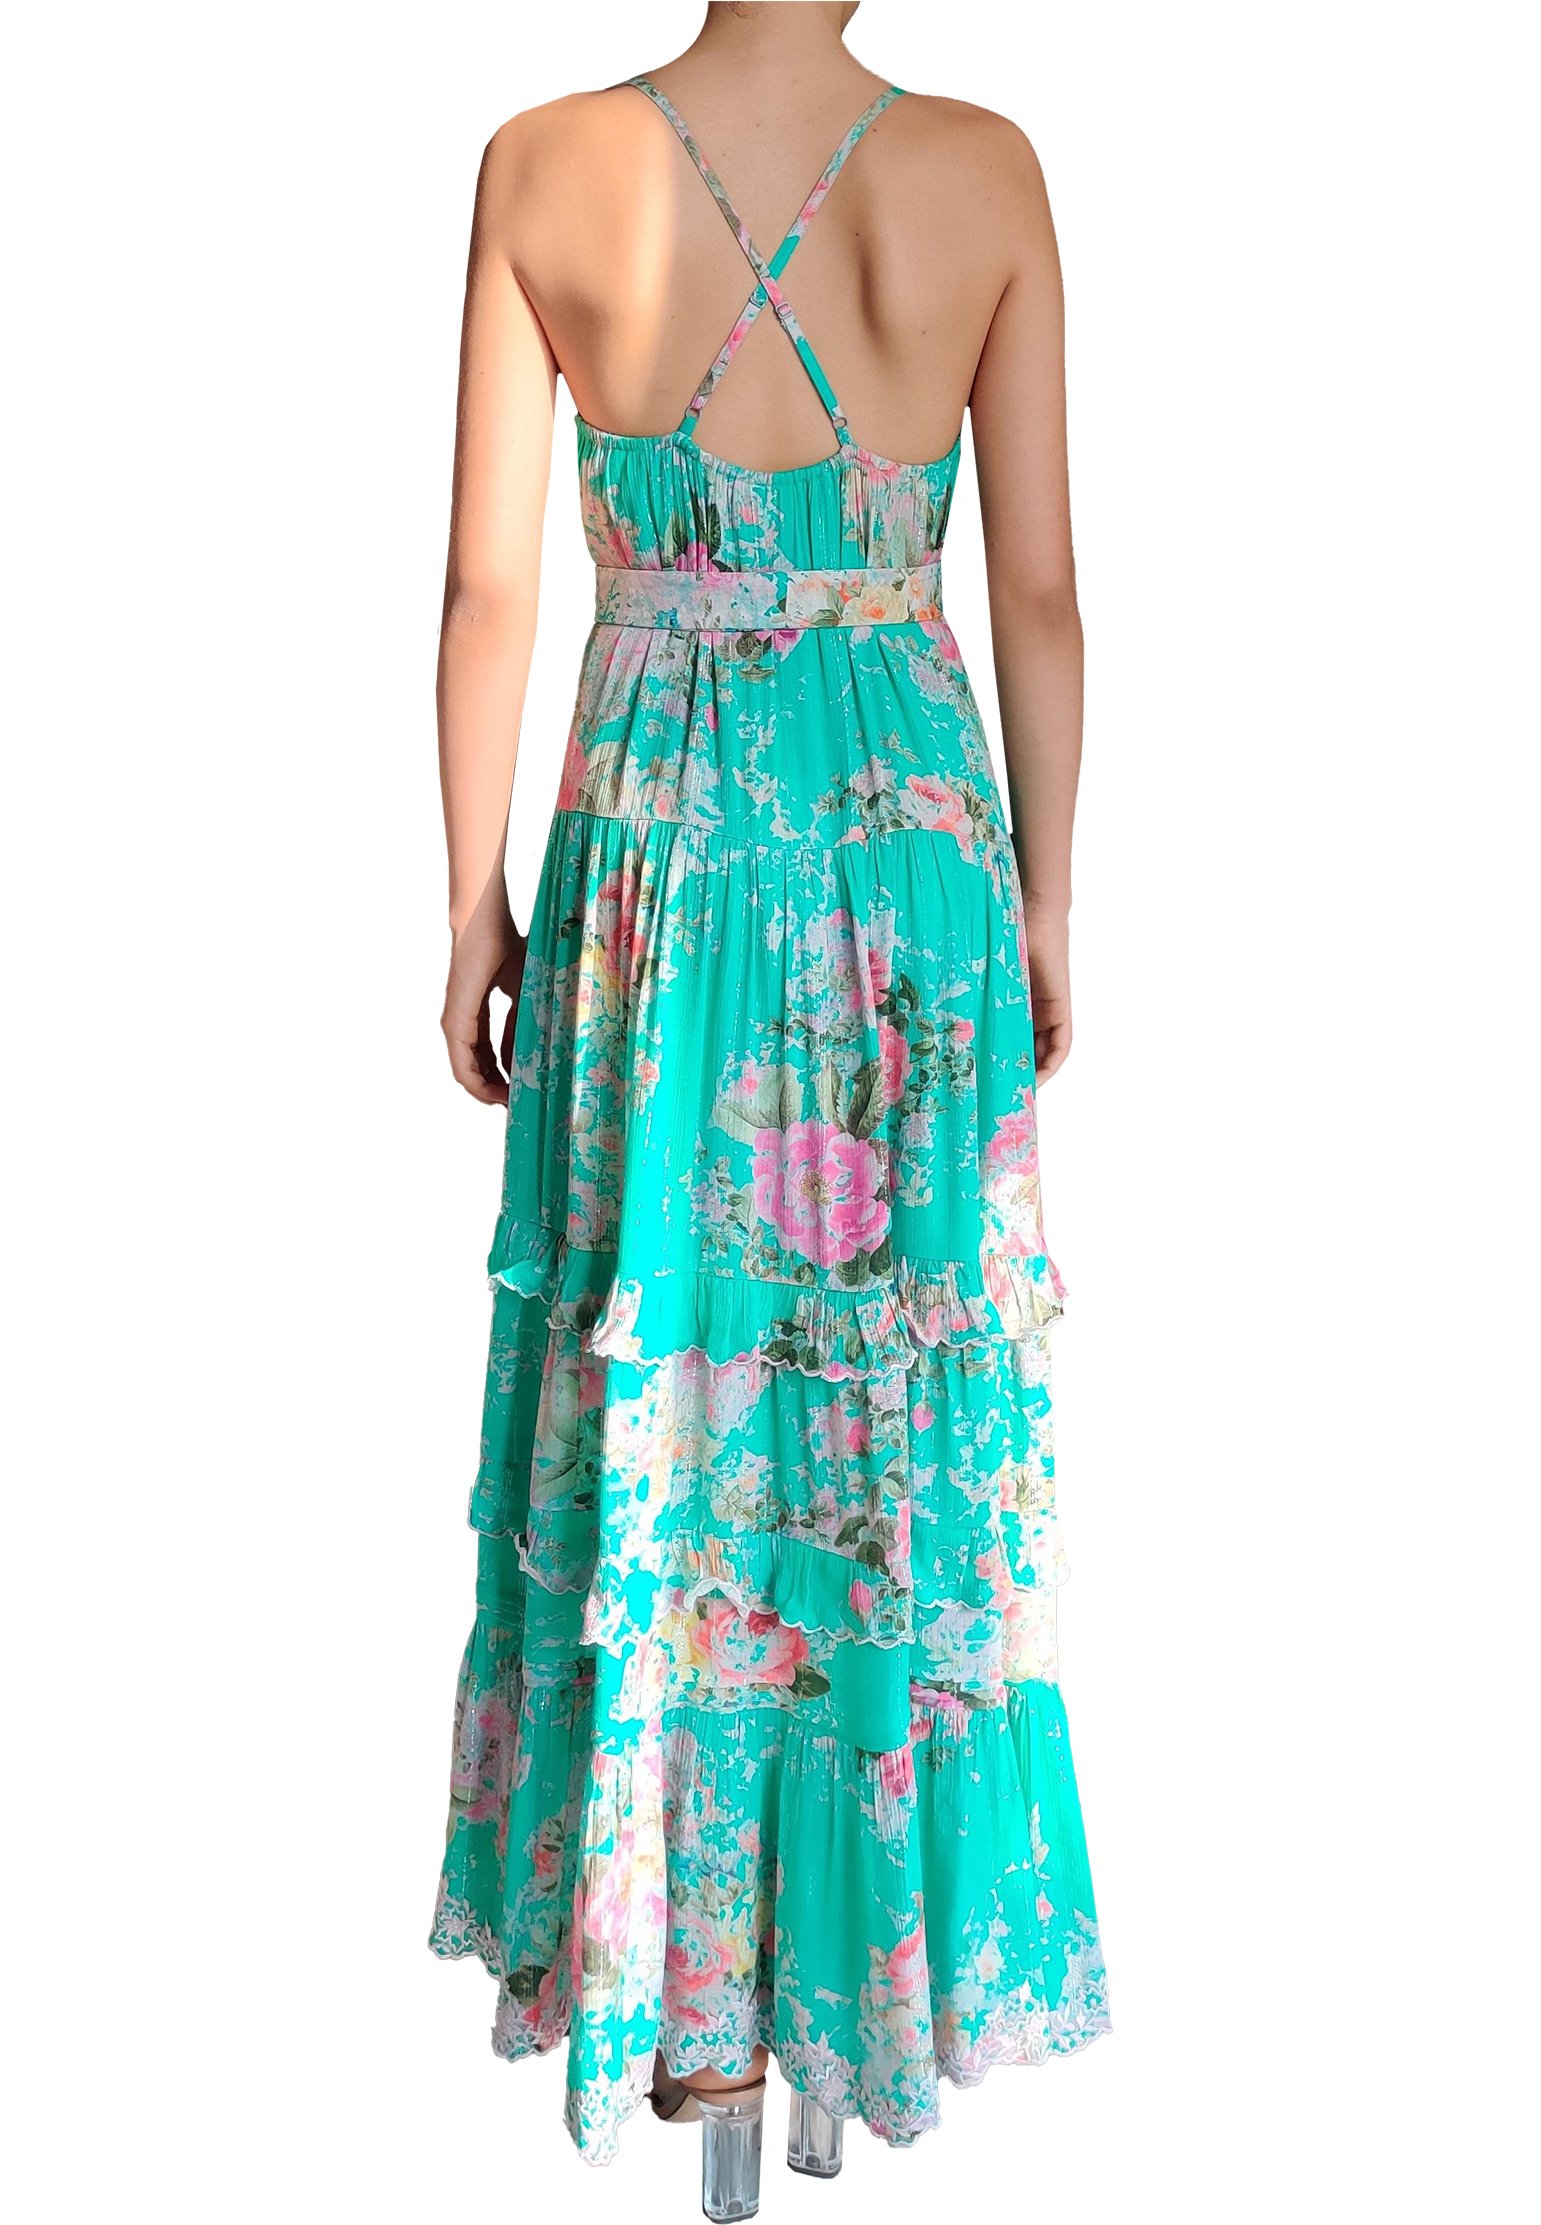 Dress HEMANT&NANDITA Color: green (Code: 756) in online store Allure